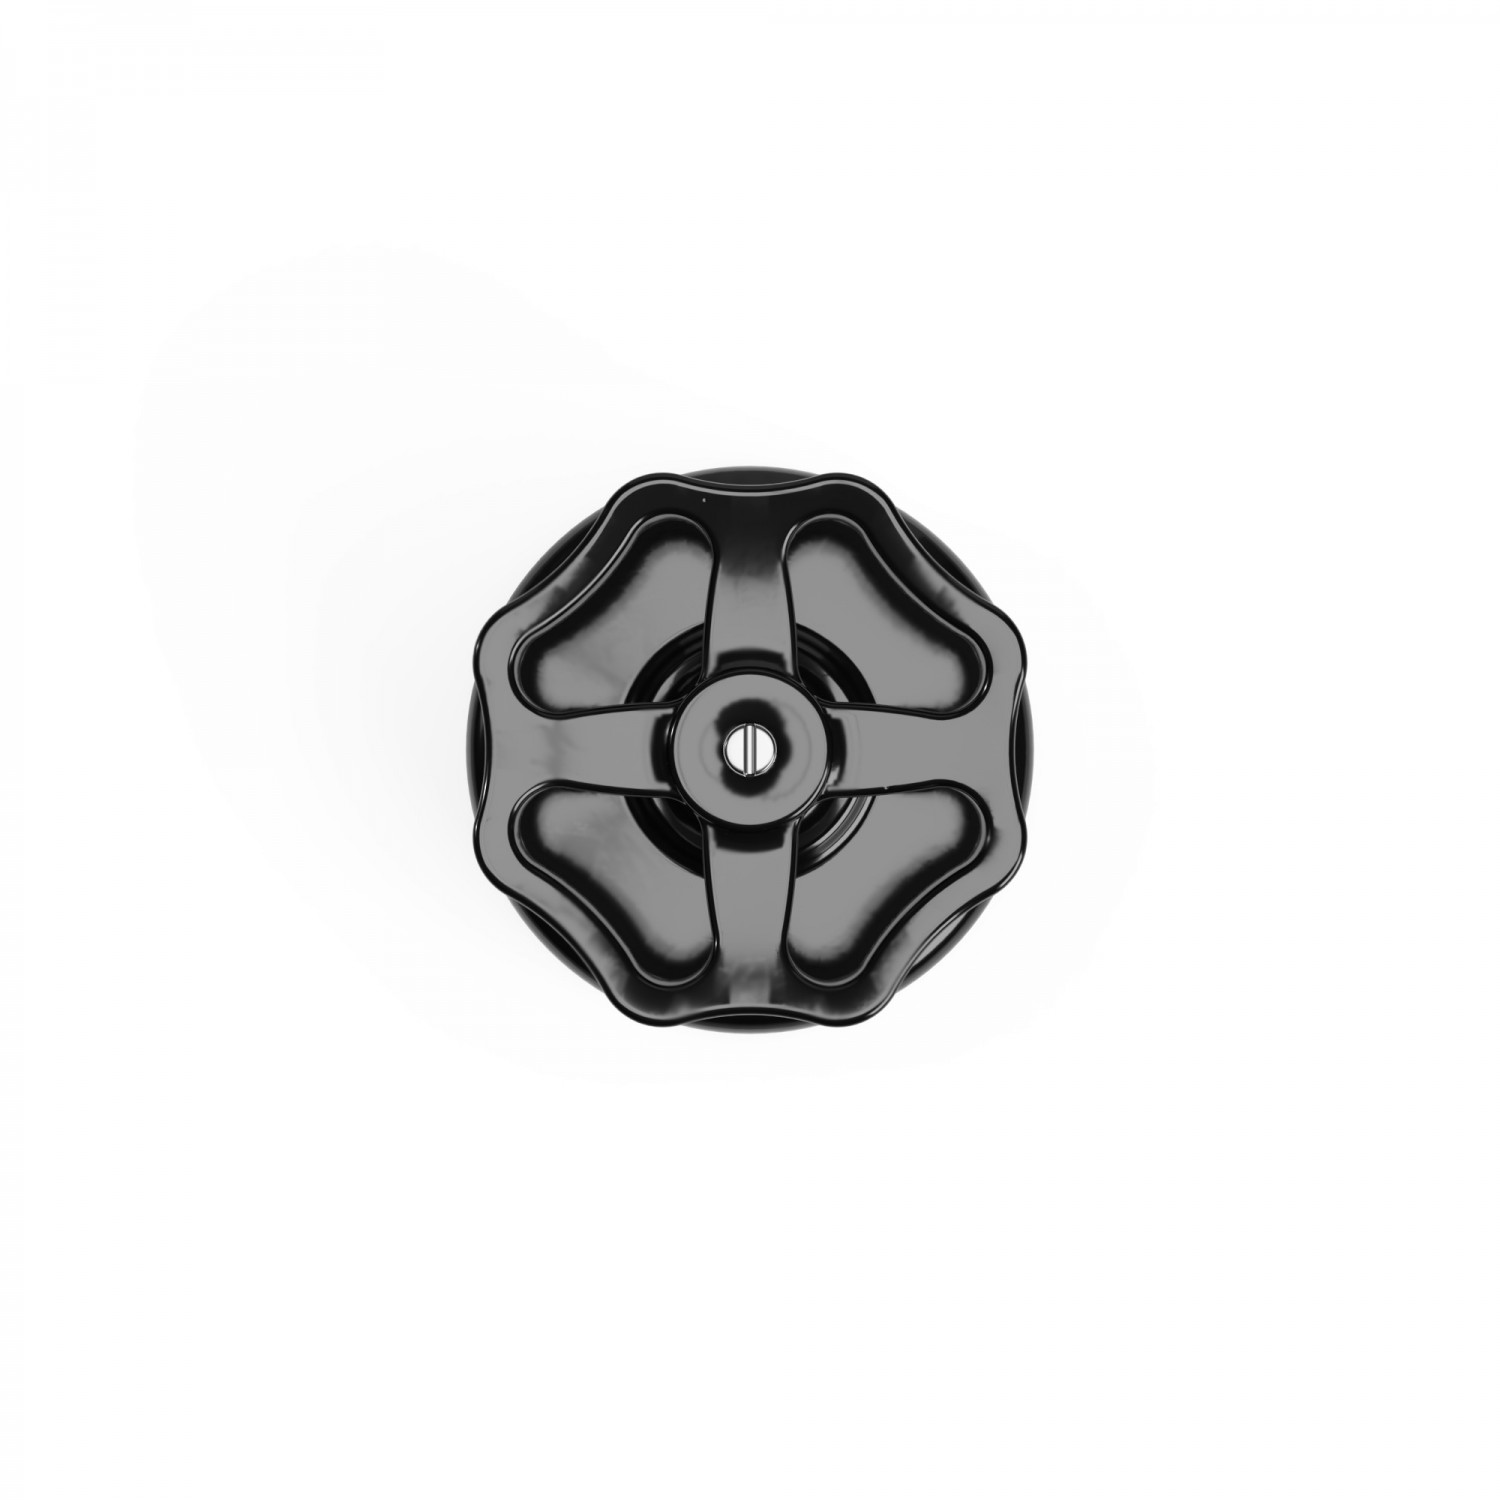 Schakelaar/omvormer in zwart porselein met knop